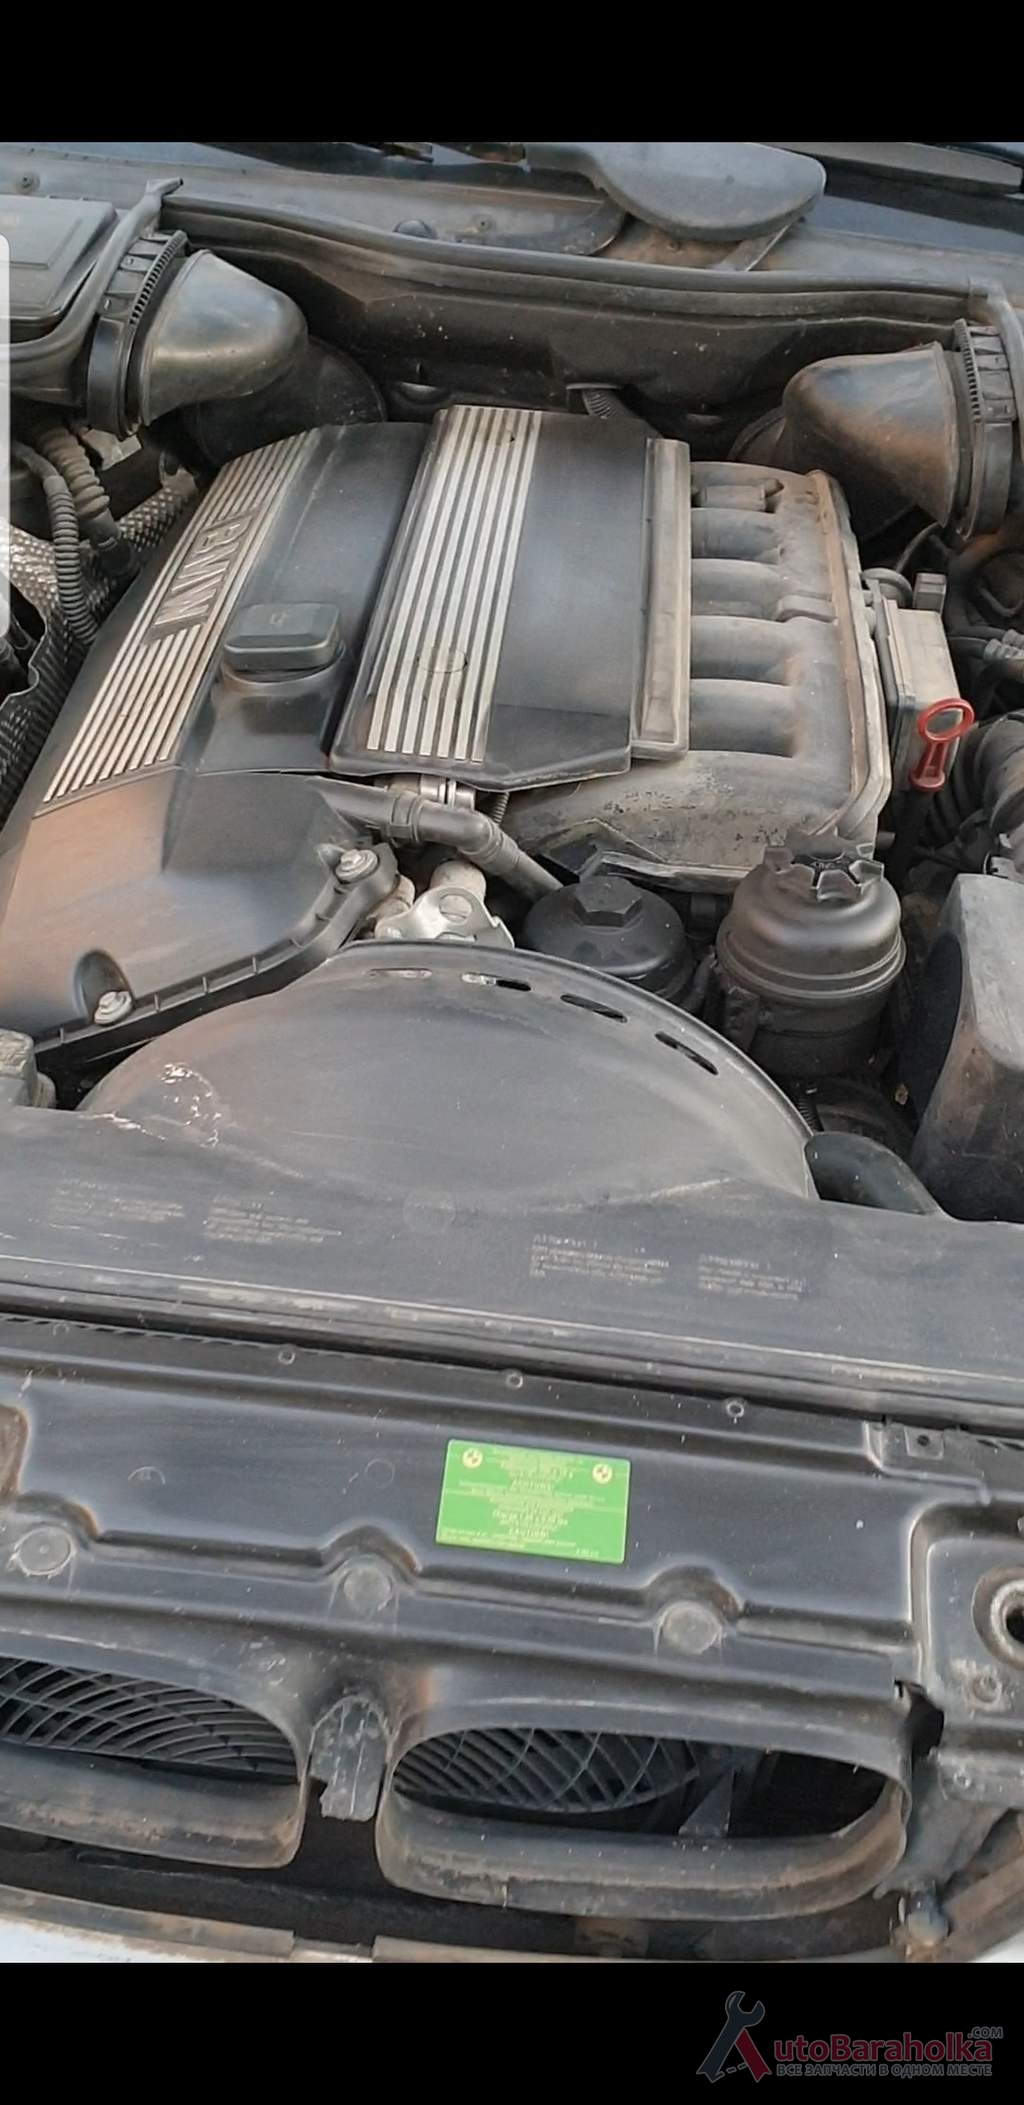 Продам Мотор, двигатель в идеальном состоянии 177тис. Без пробега по Украине. Ещё не снят можно завести послушать Житомир